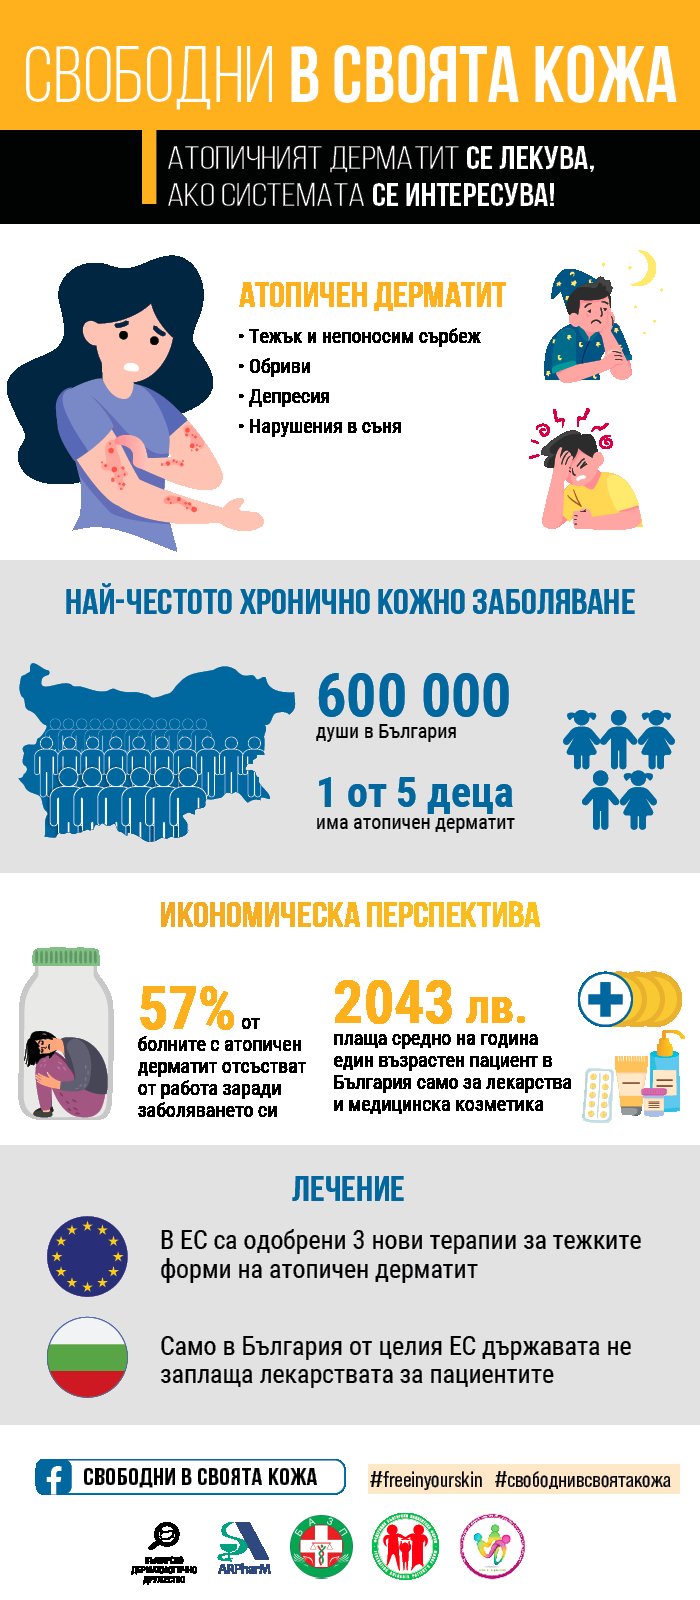 Около 200 000 възрастни в България боледуват от атопичен дерматит